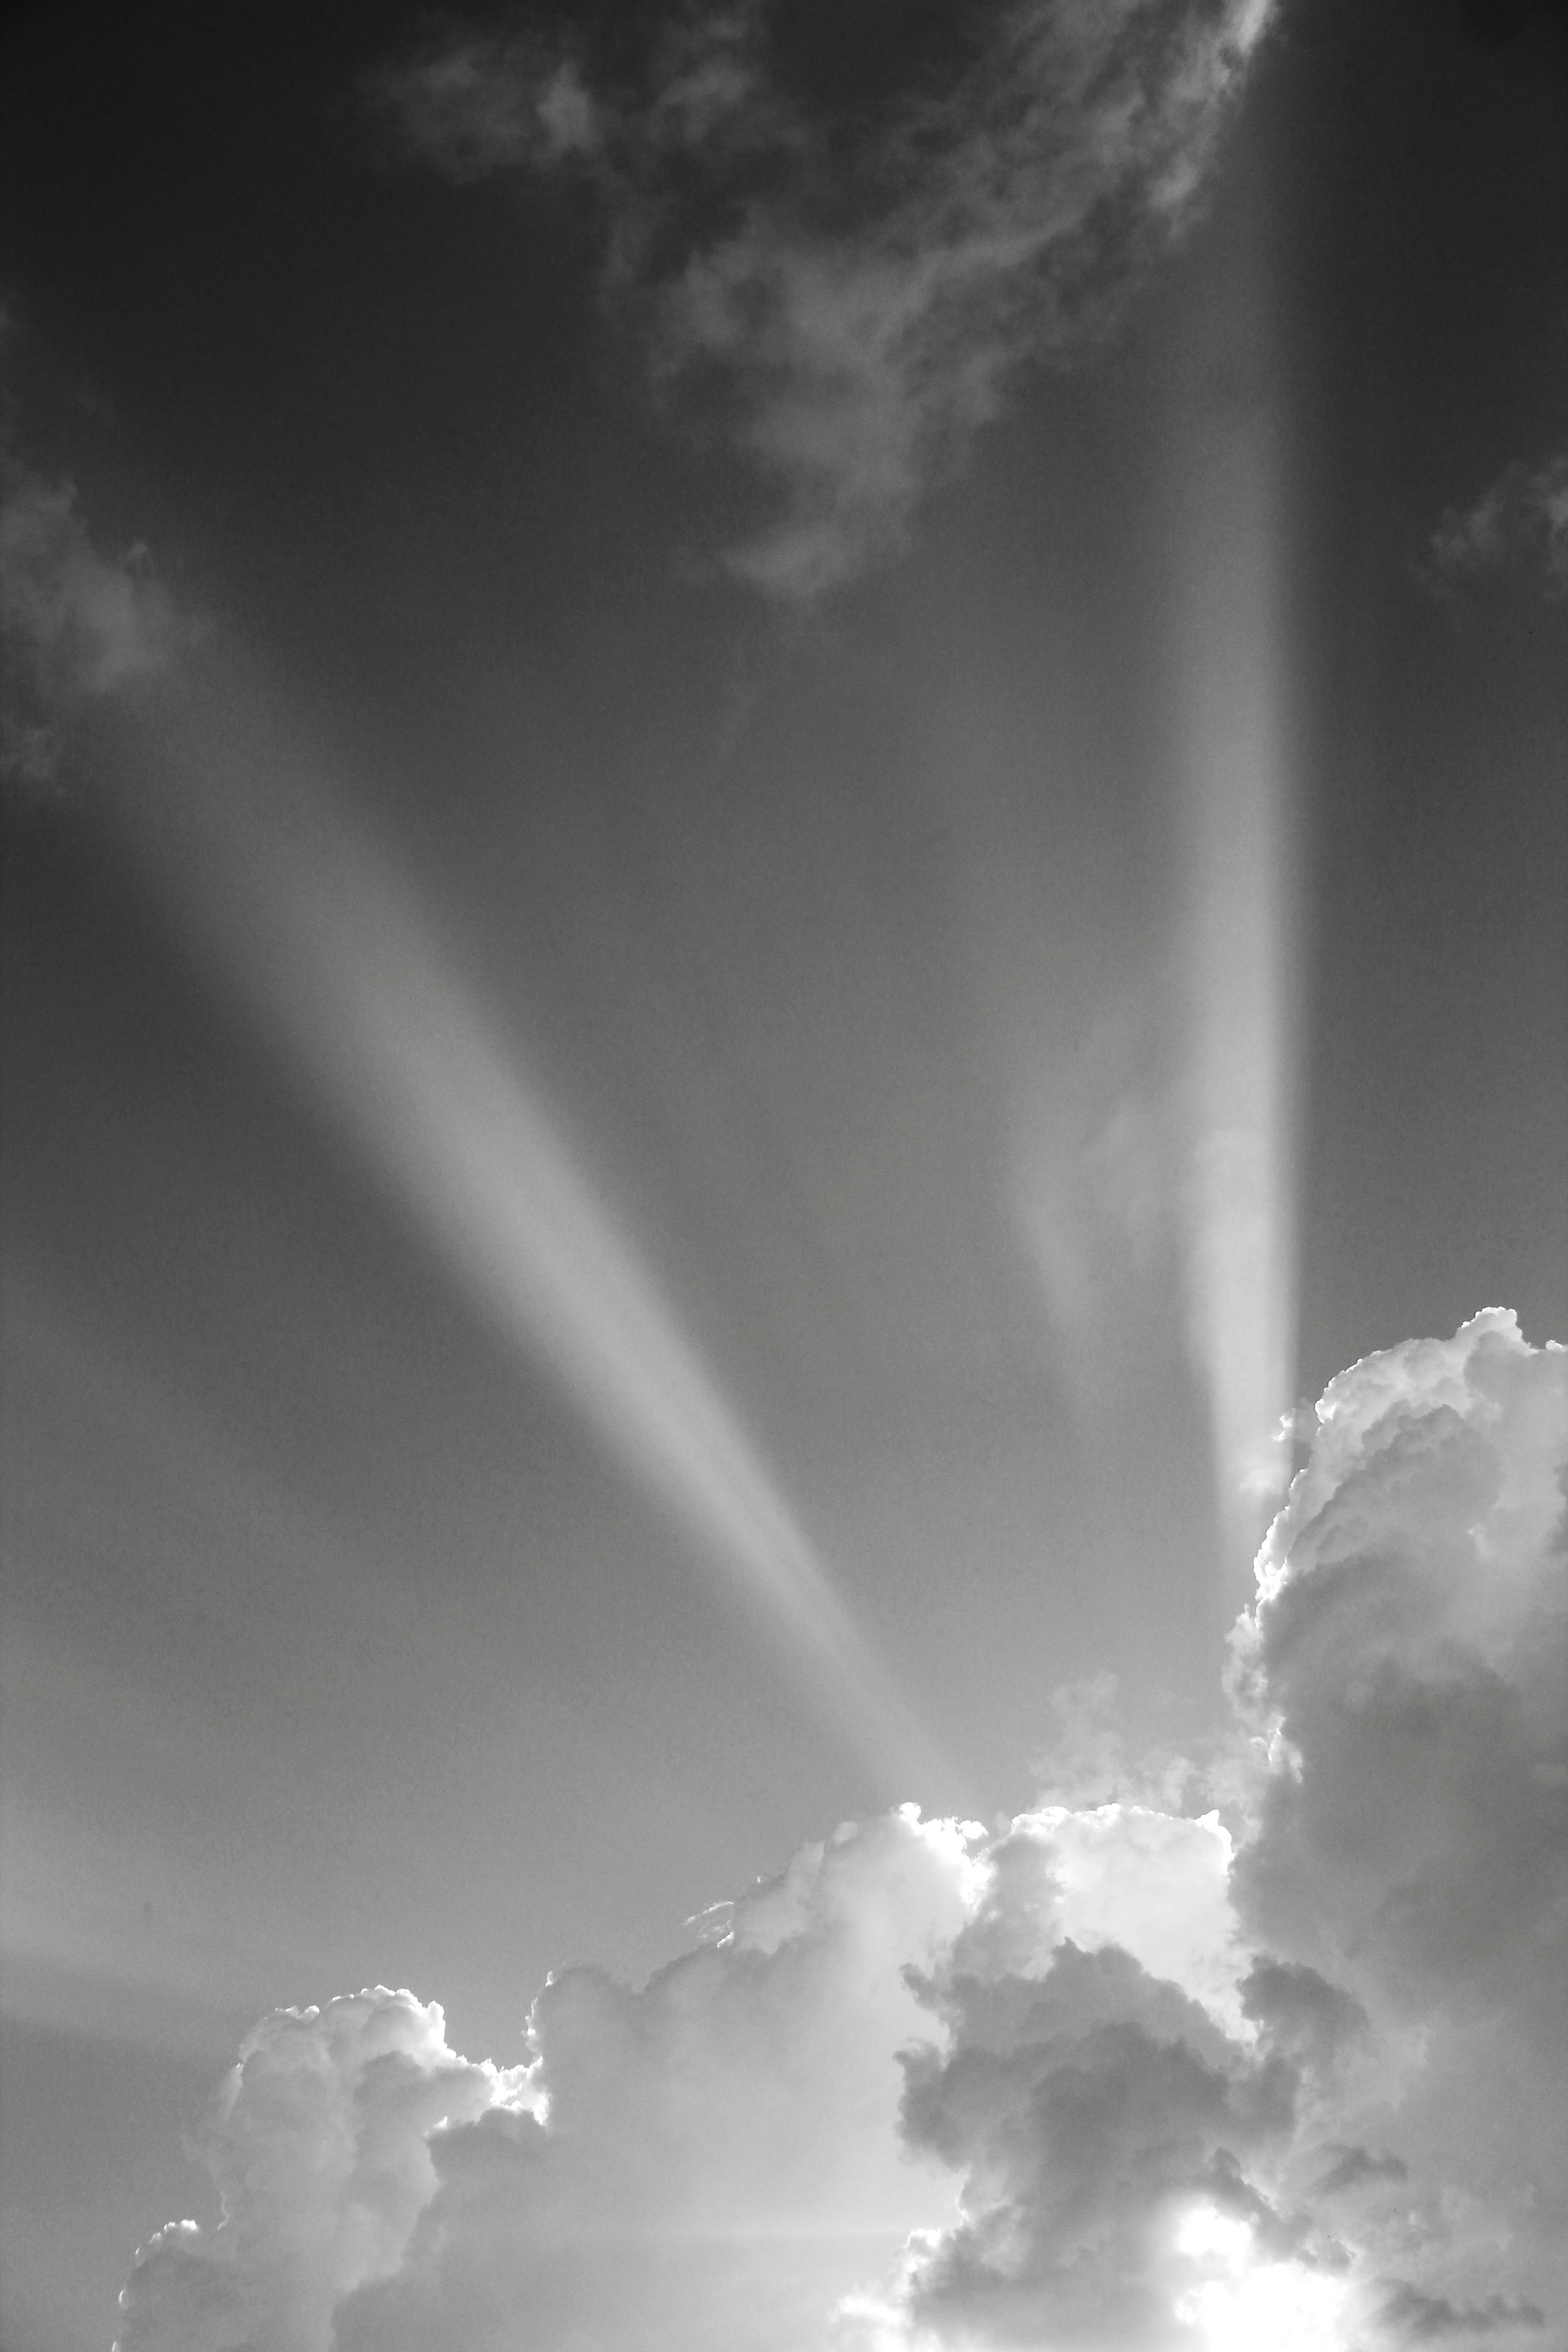 Las Nubes Del Cielo En Un Día Soleado Cielo De Fondo Blanco Nubes Fotos  Retratos Imágenes Y Fotografía De Archivo Libres De Derecho Image  50039662